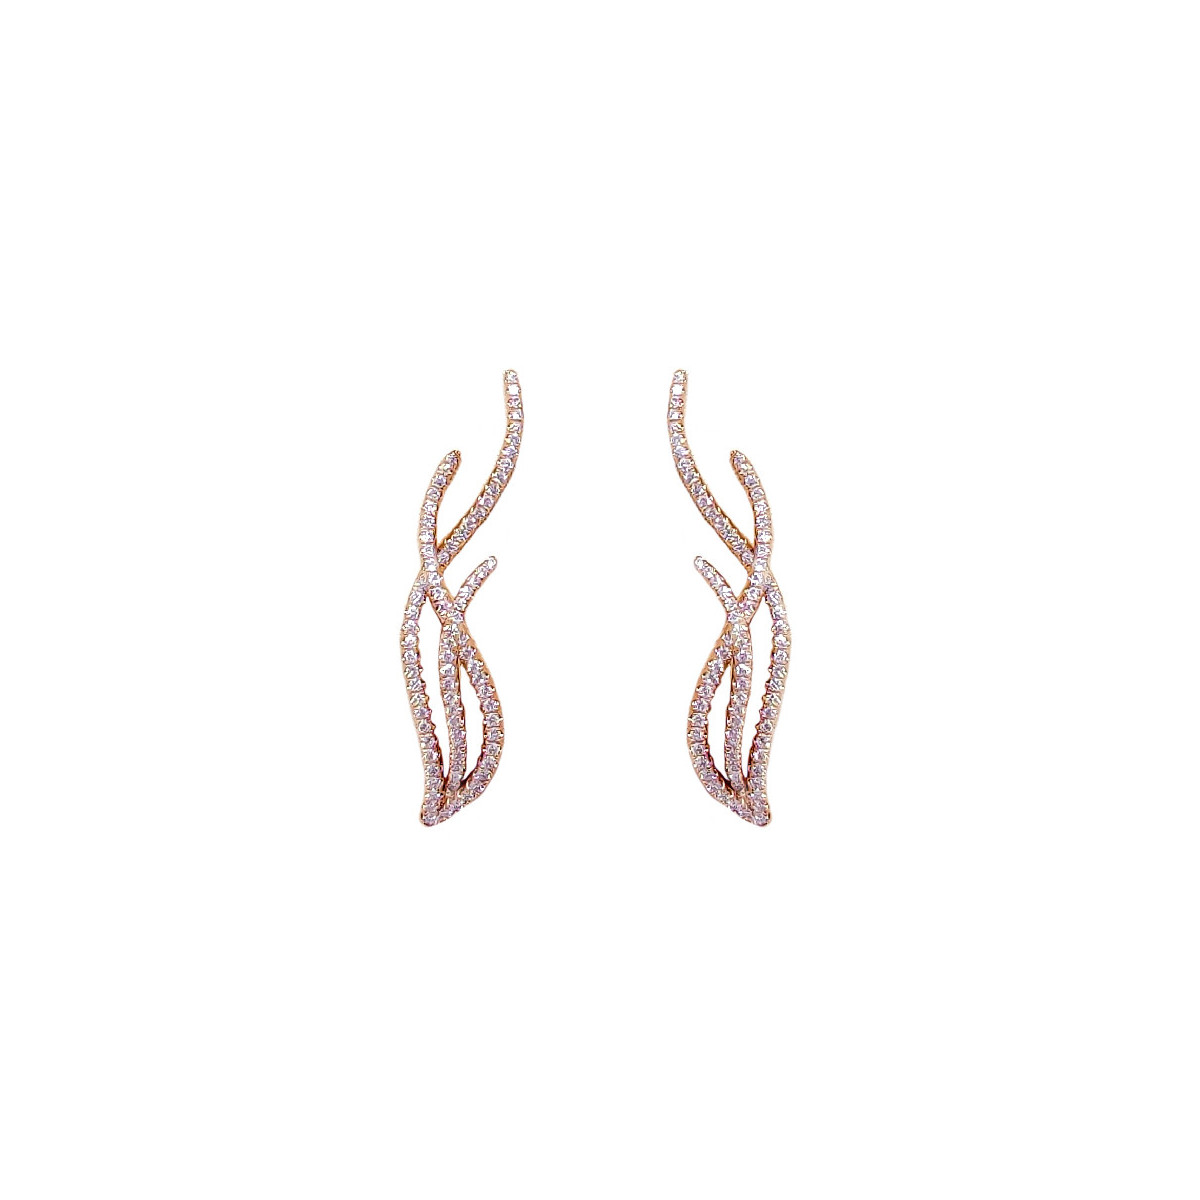 Gold & diamonds earrings